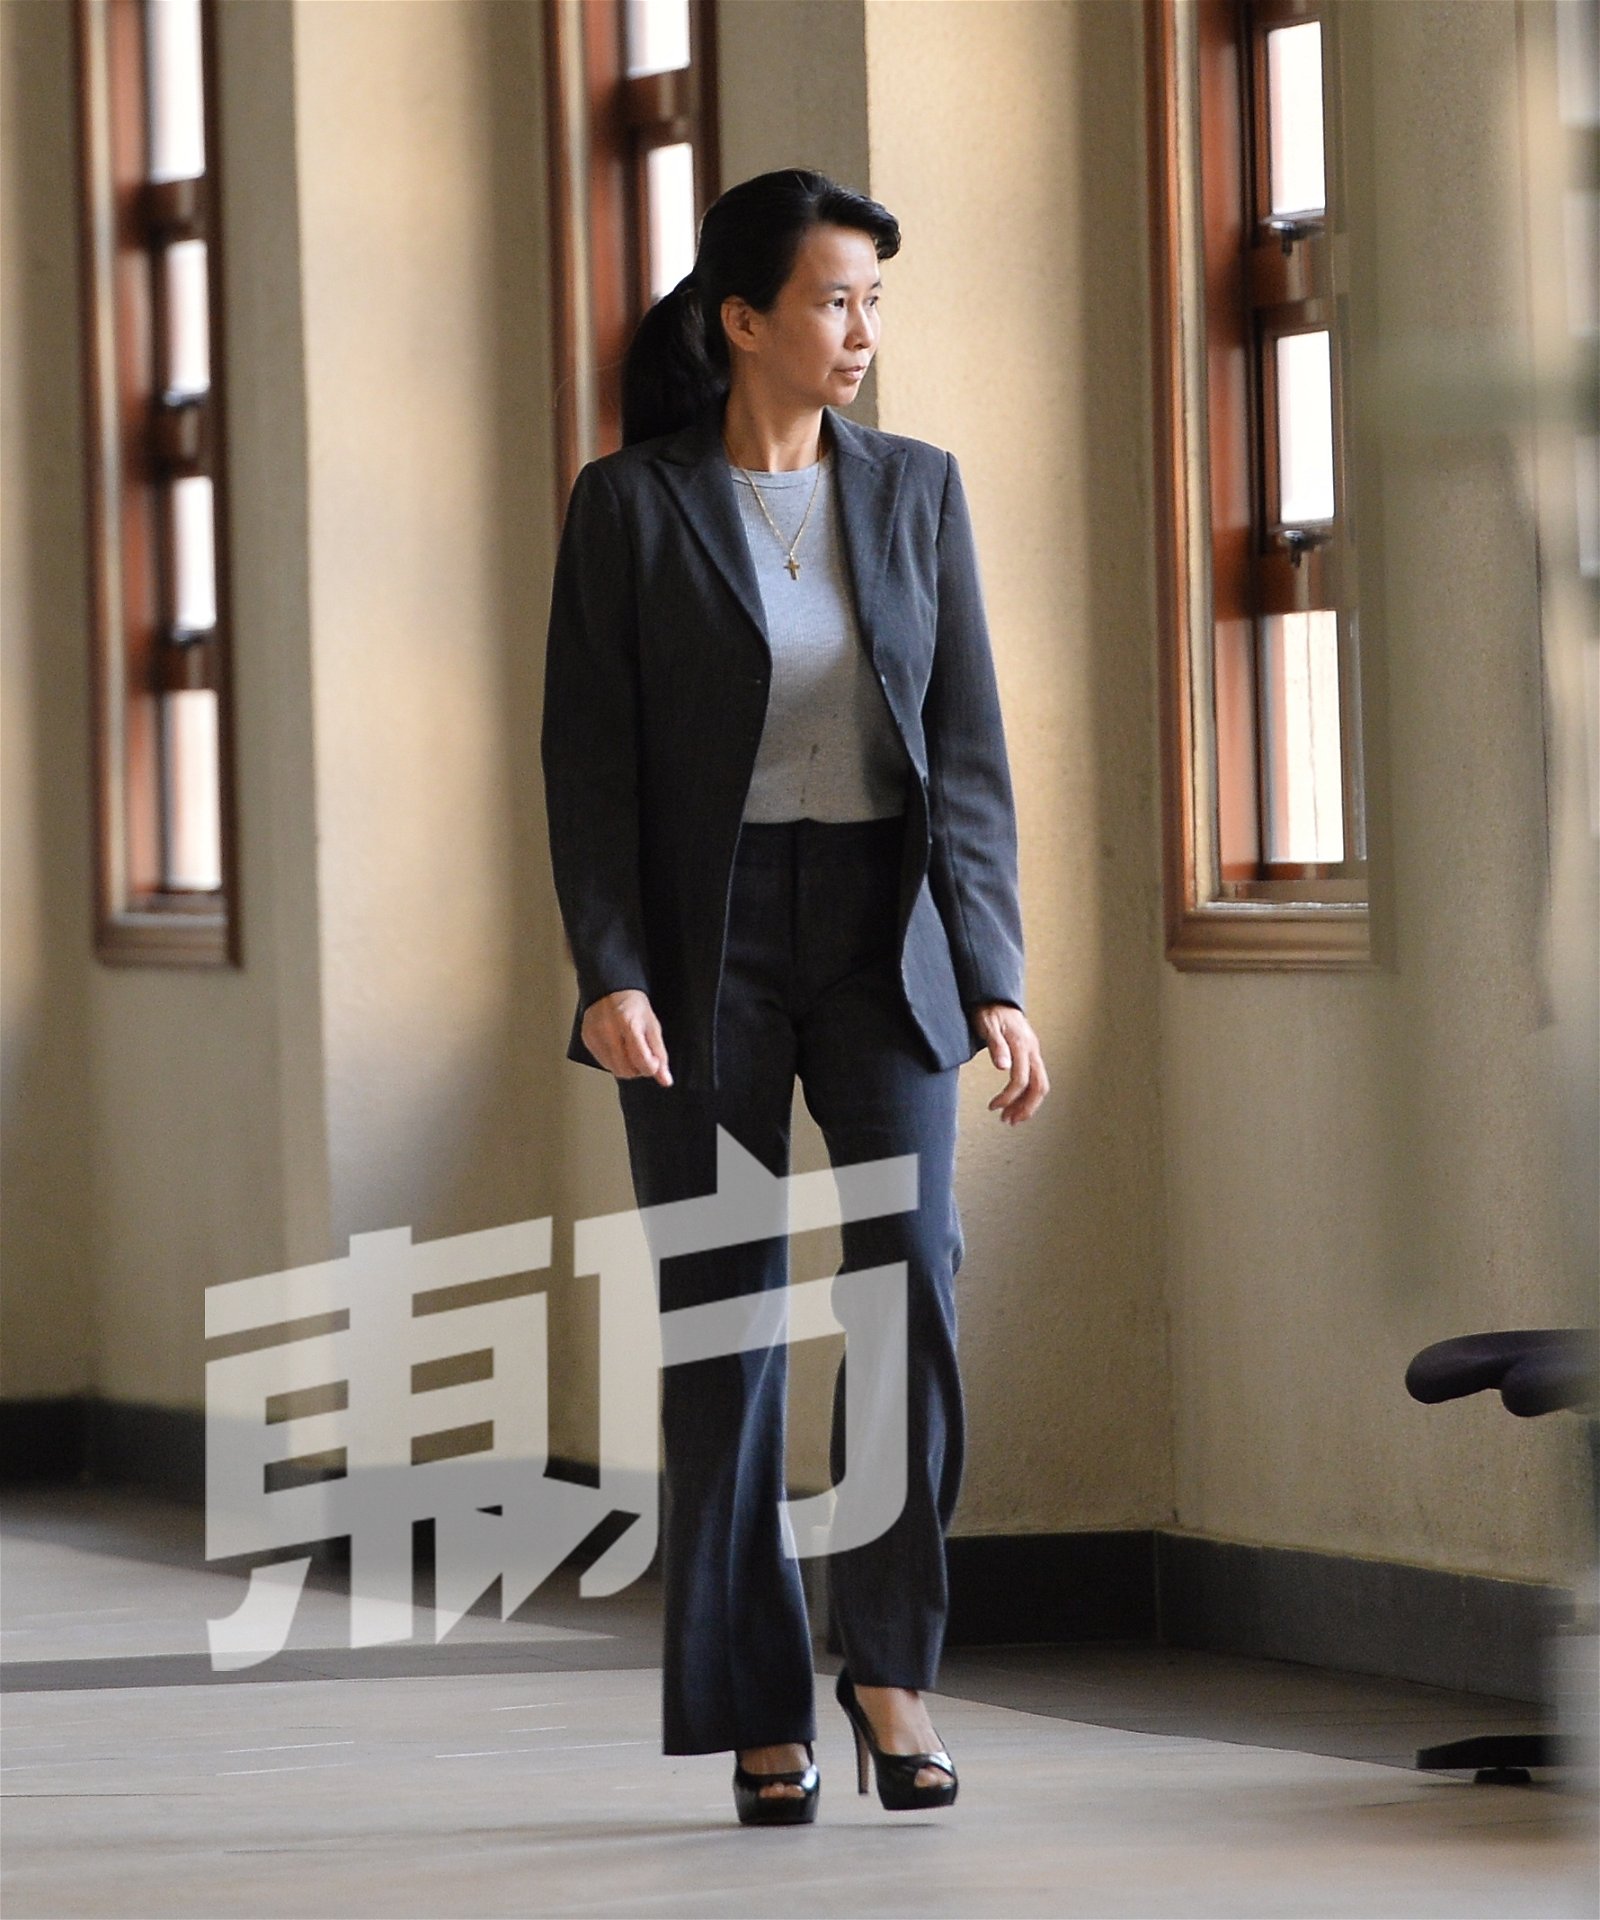 纳吉SRC案第54名证人大马银行前客户经理余锦萍。（摄影：颜泉春）